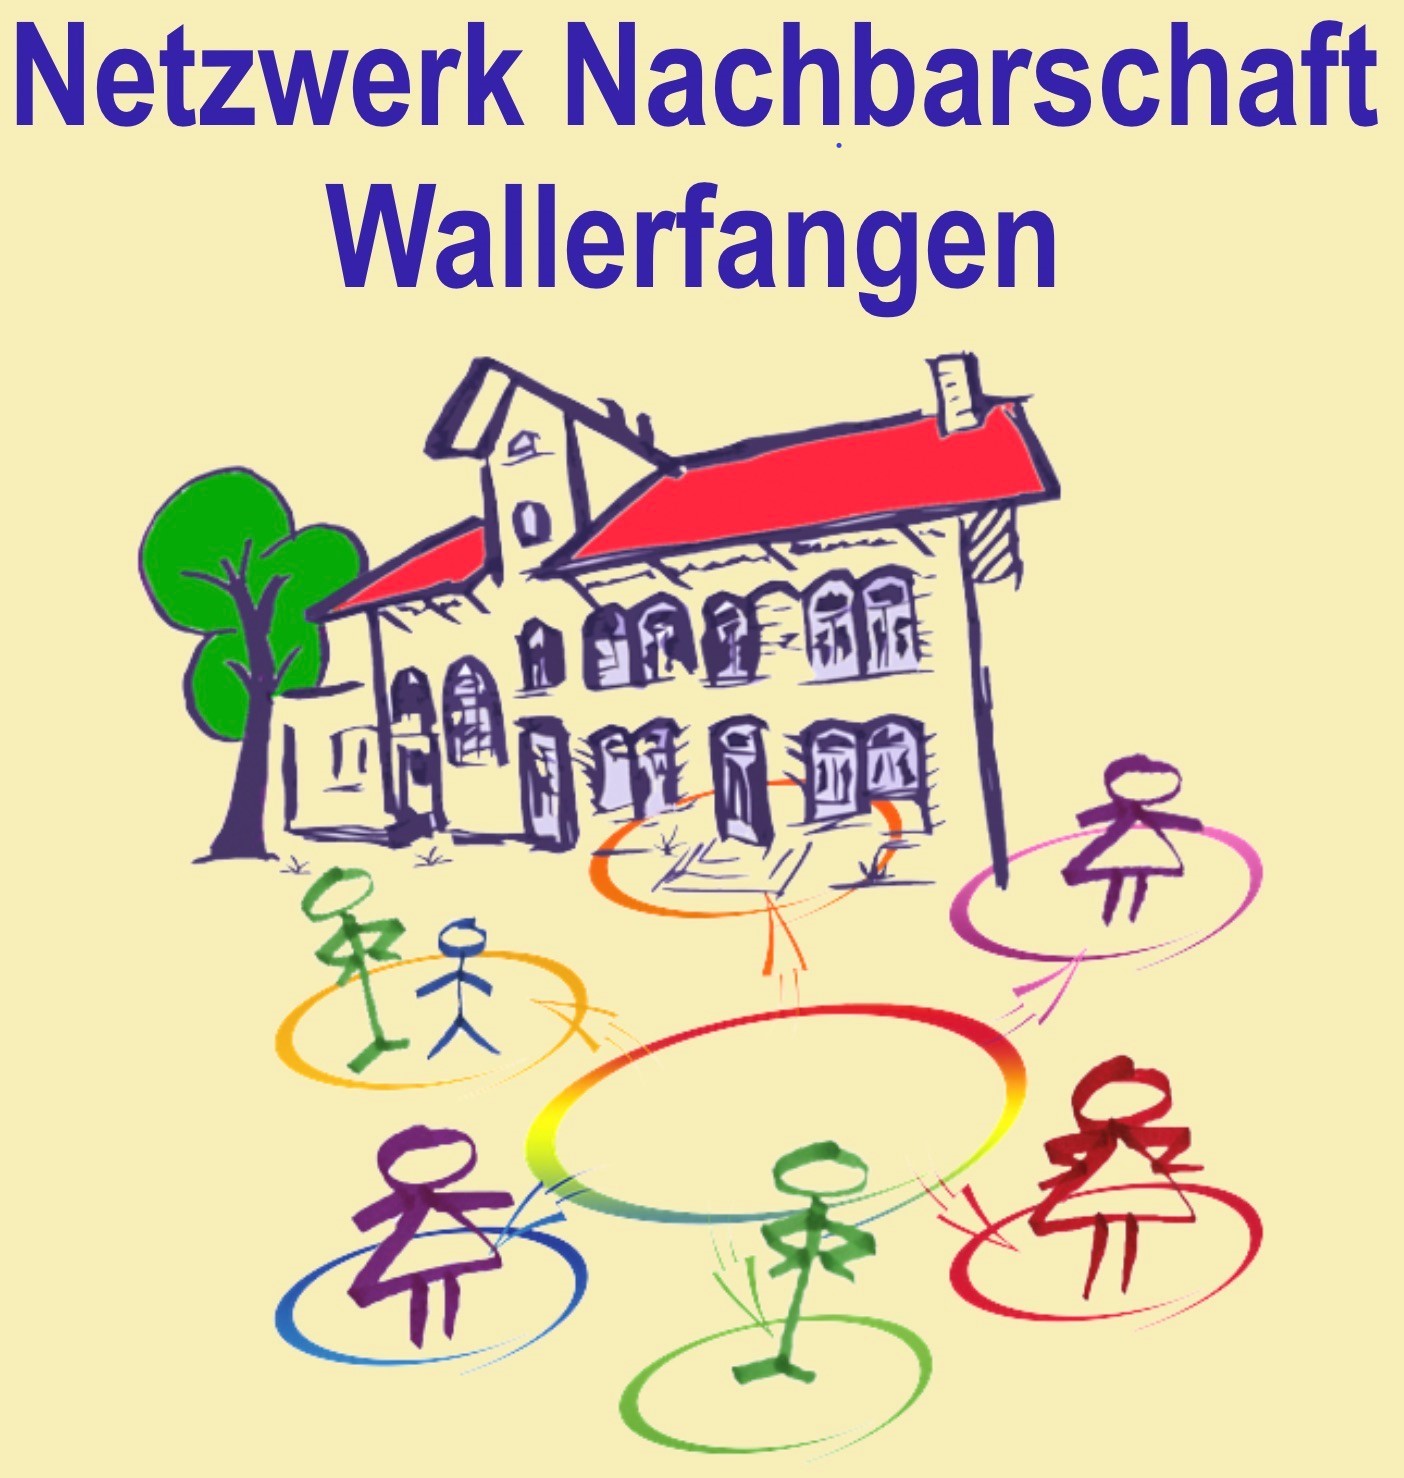 Profilbild des Vereins Netzwerk Nachbarschaft Wallerfangen